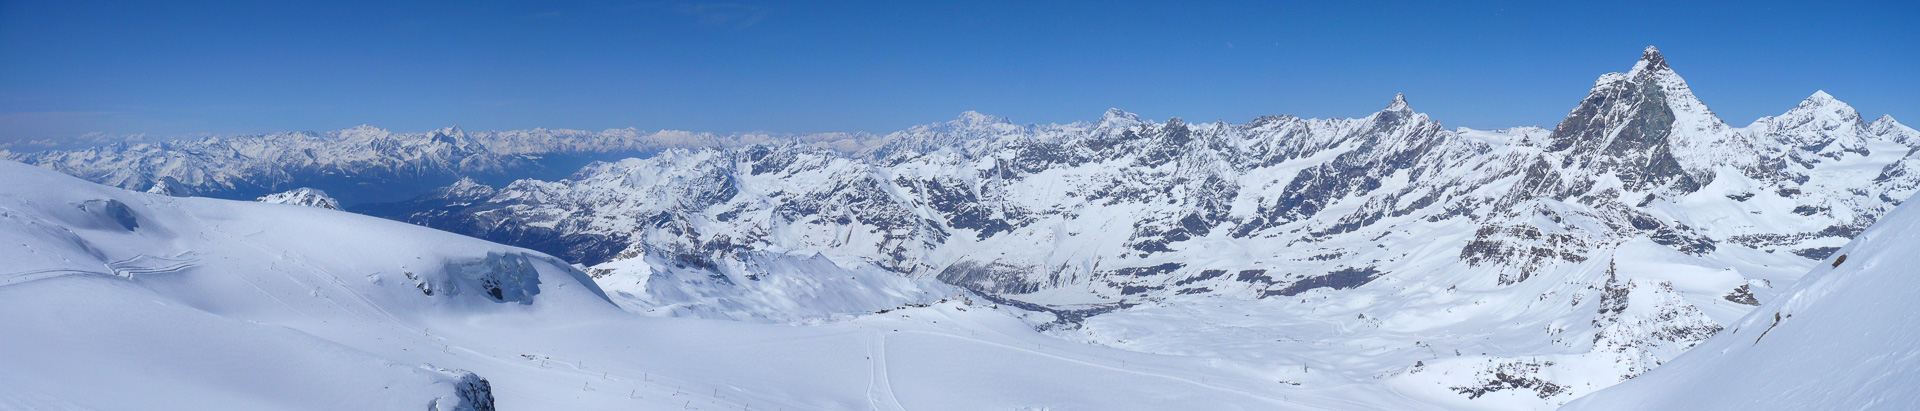 Vom Klein Matterhorn: Gran Paradiso, Mont Blanc und Grand Combin in der Ferne.